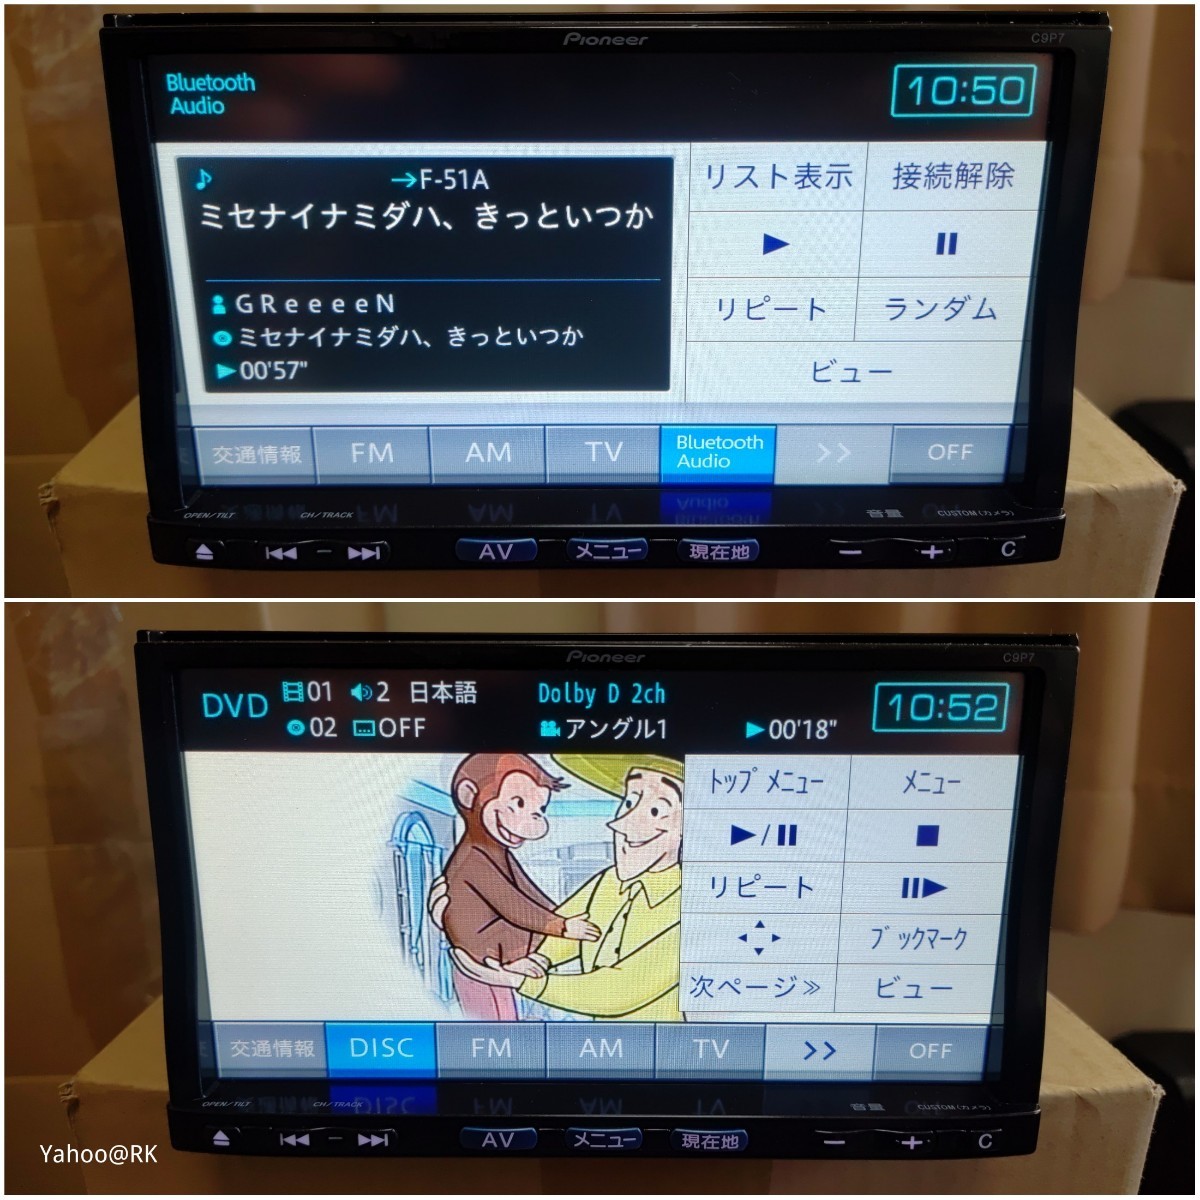 マツダ 純正ナビ 型式 C9P7 Pioneer DVD再生 Bluetooth テレビ フルセグ SDカード iPod carrozzeria 楽ナビ AVIC-MRZ99 同等品 地図SDなしの画像2